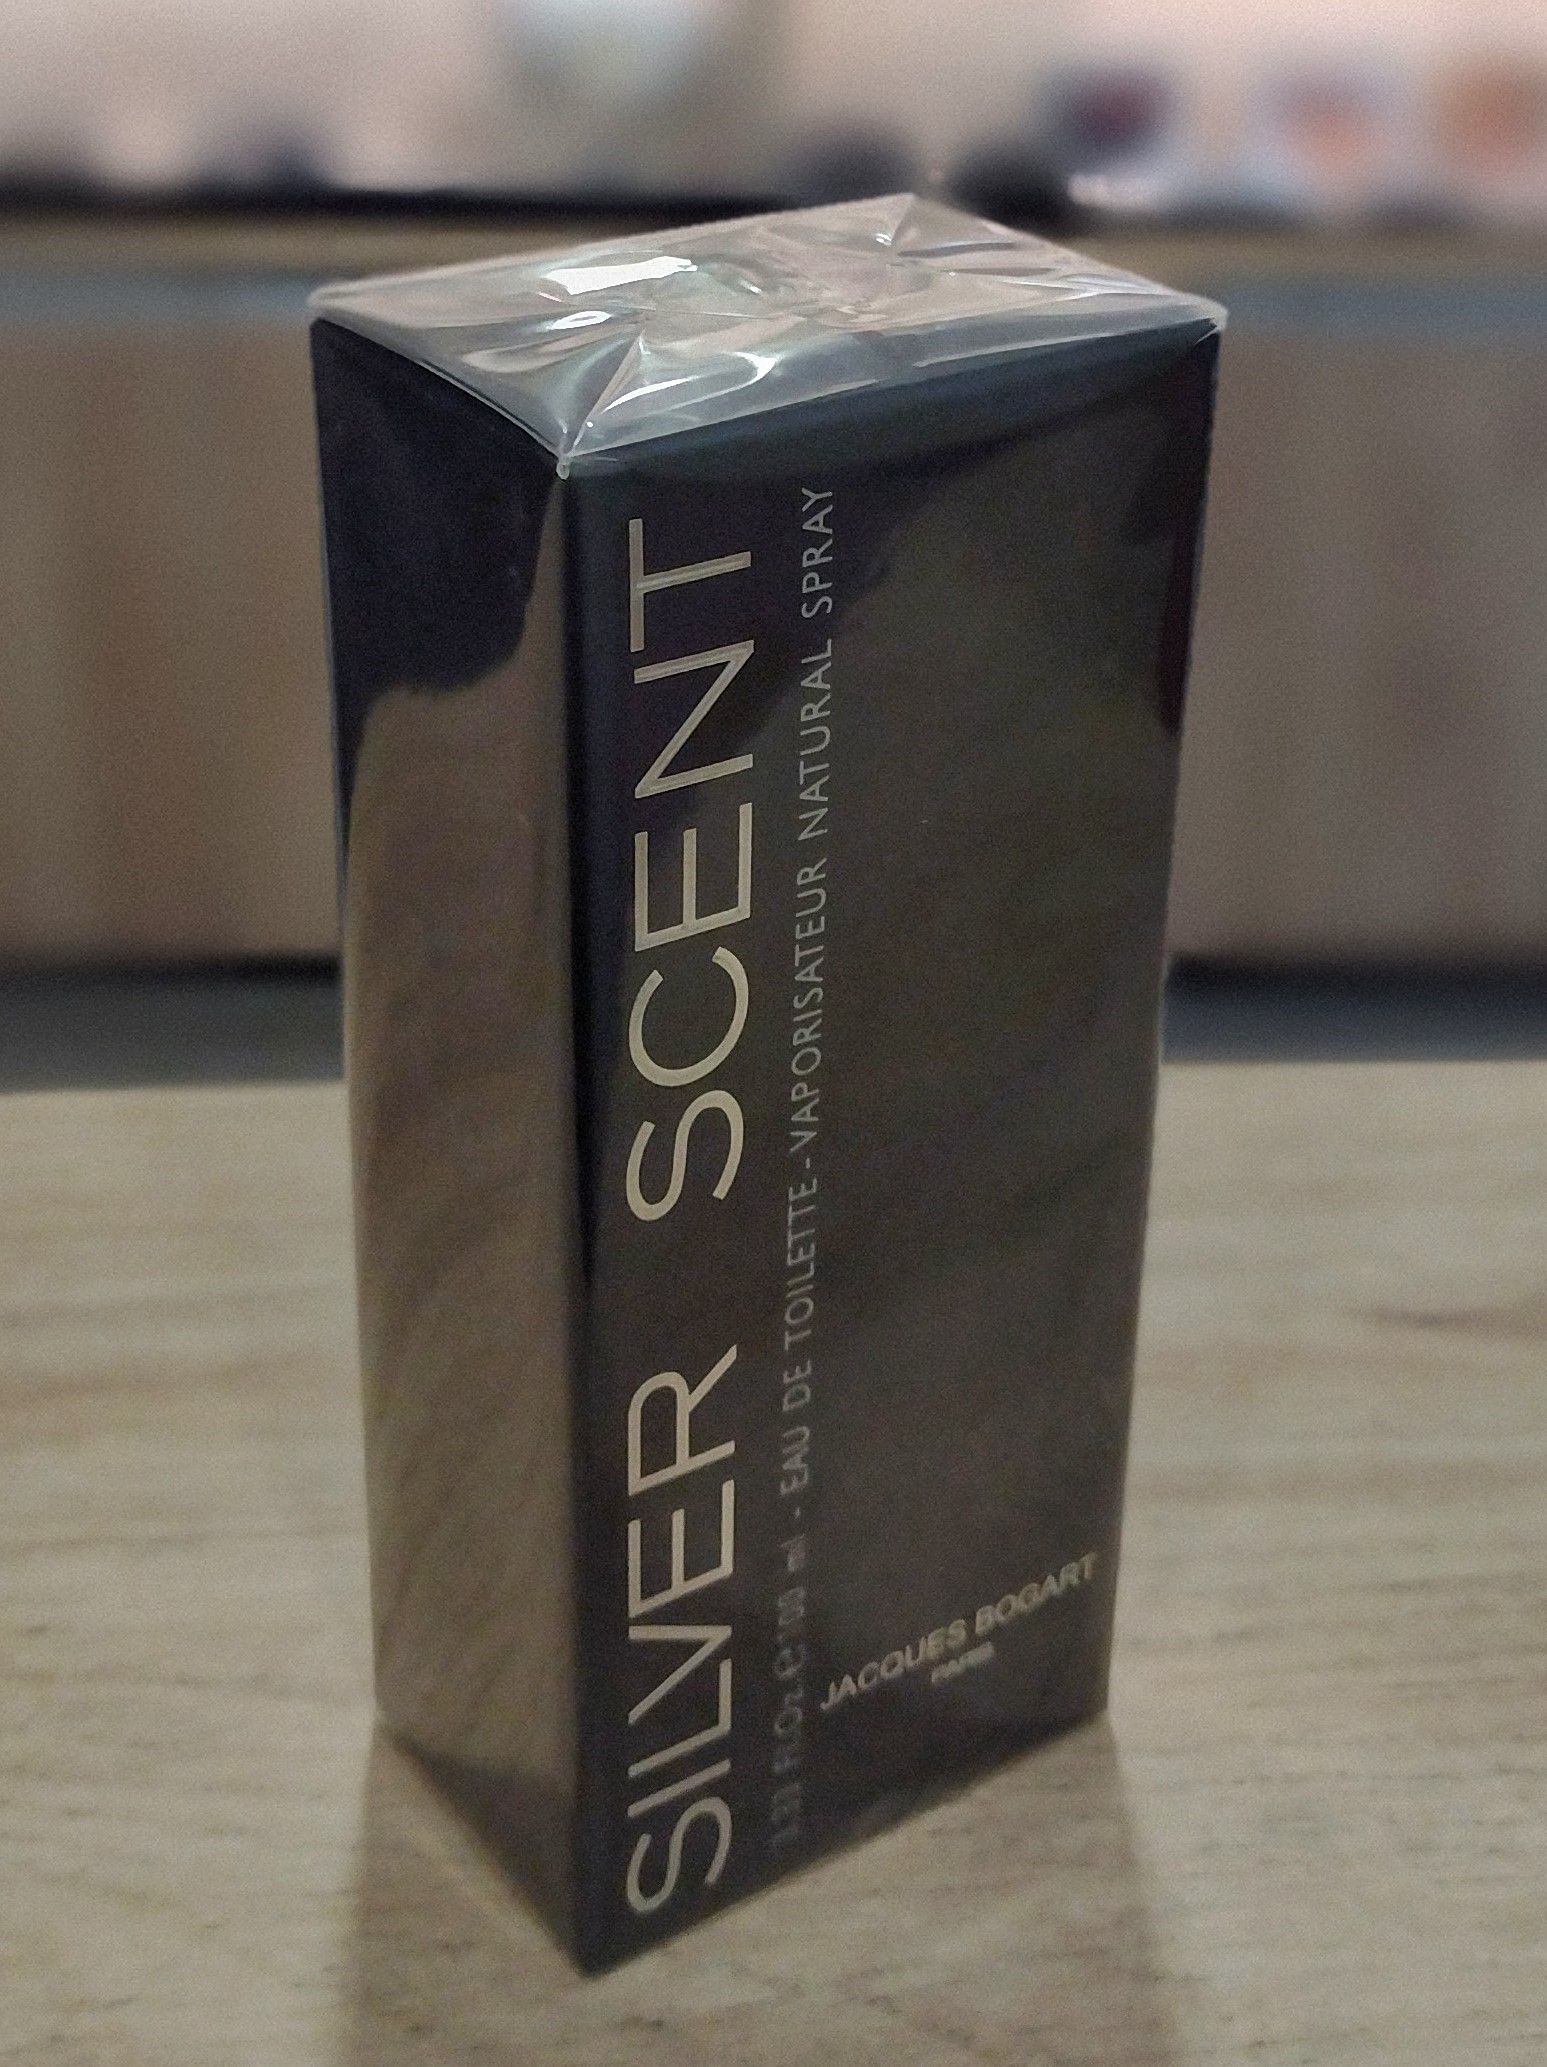 Perfume Silver Scent Jacques Bogart Masculino Eau de Toilette 100 ml -  Trust Outlet